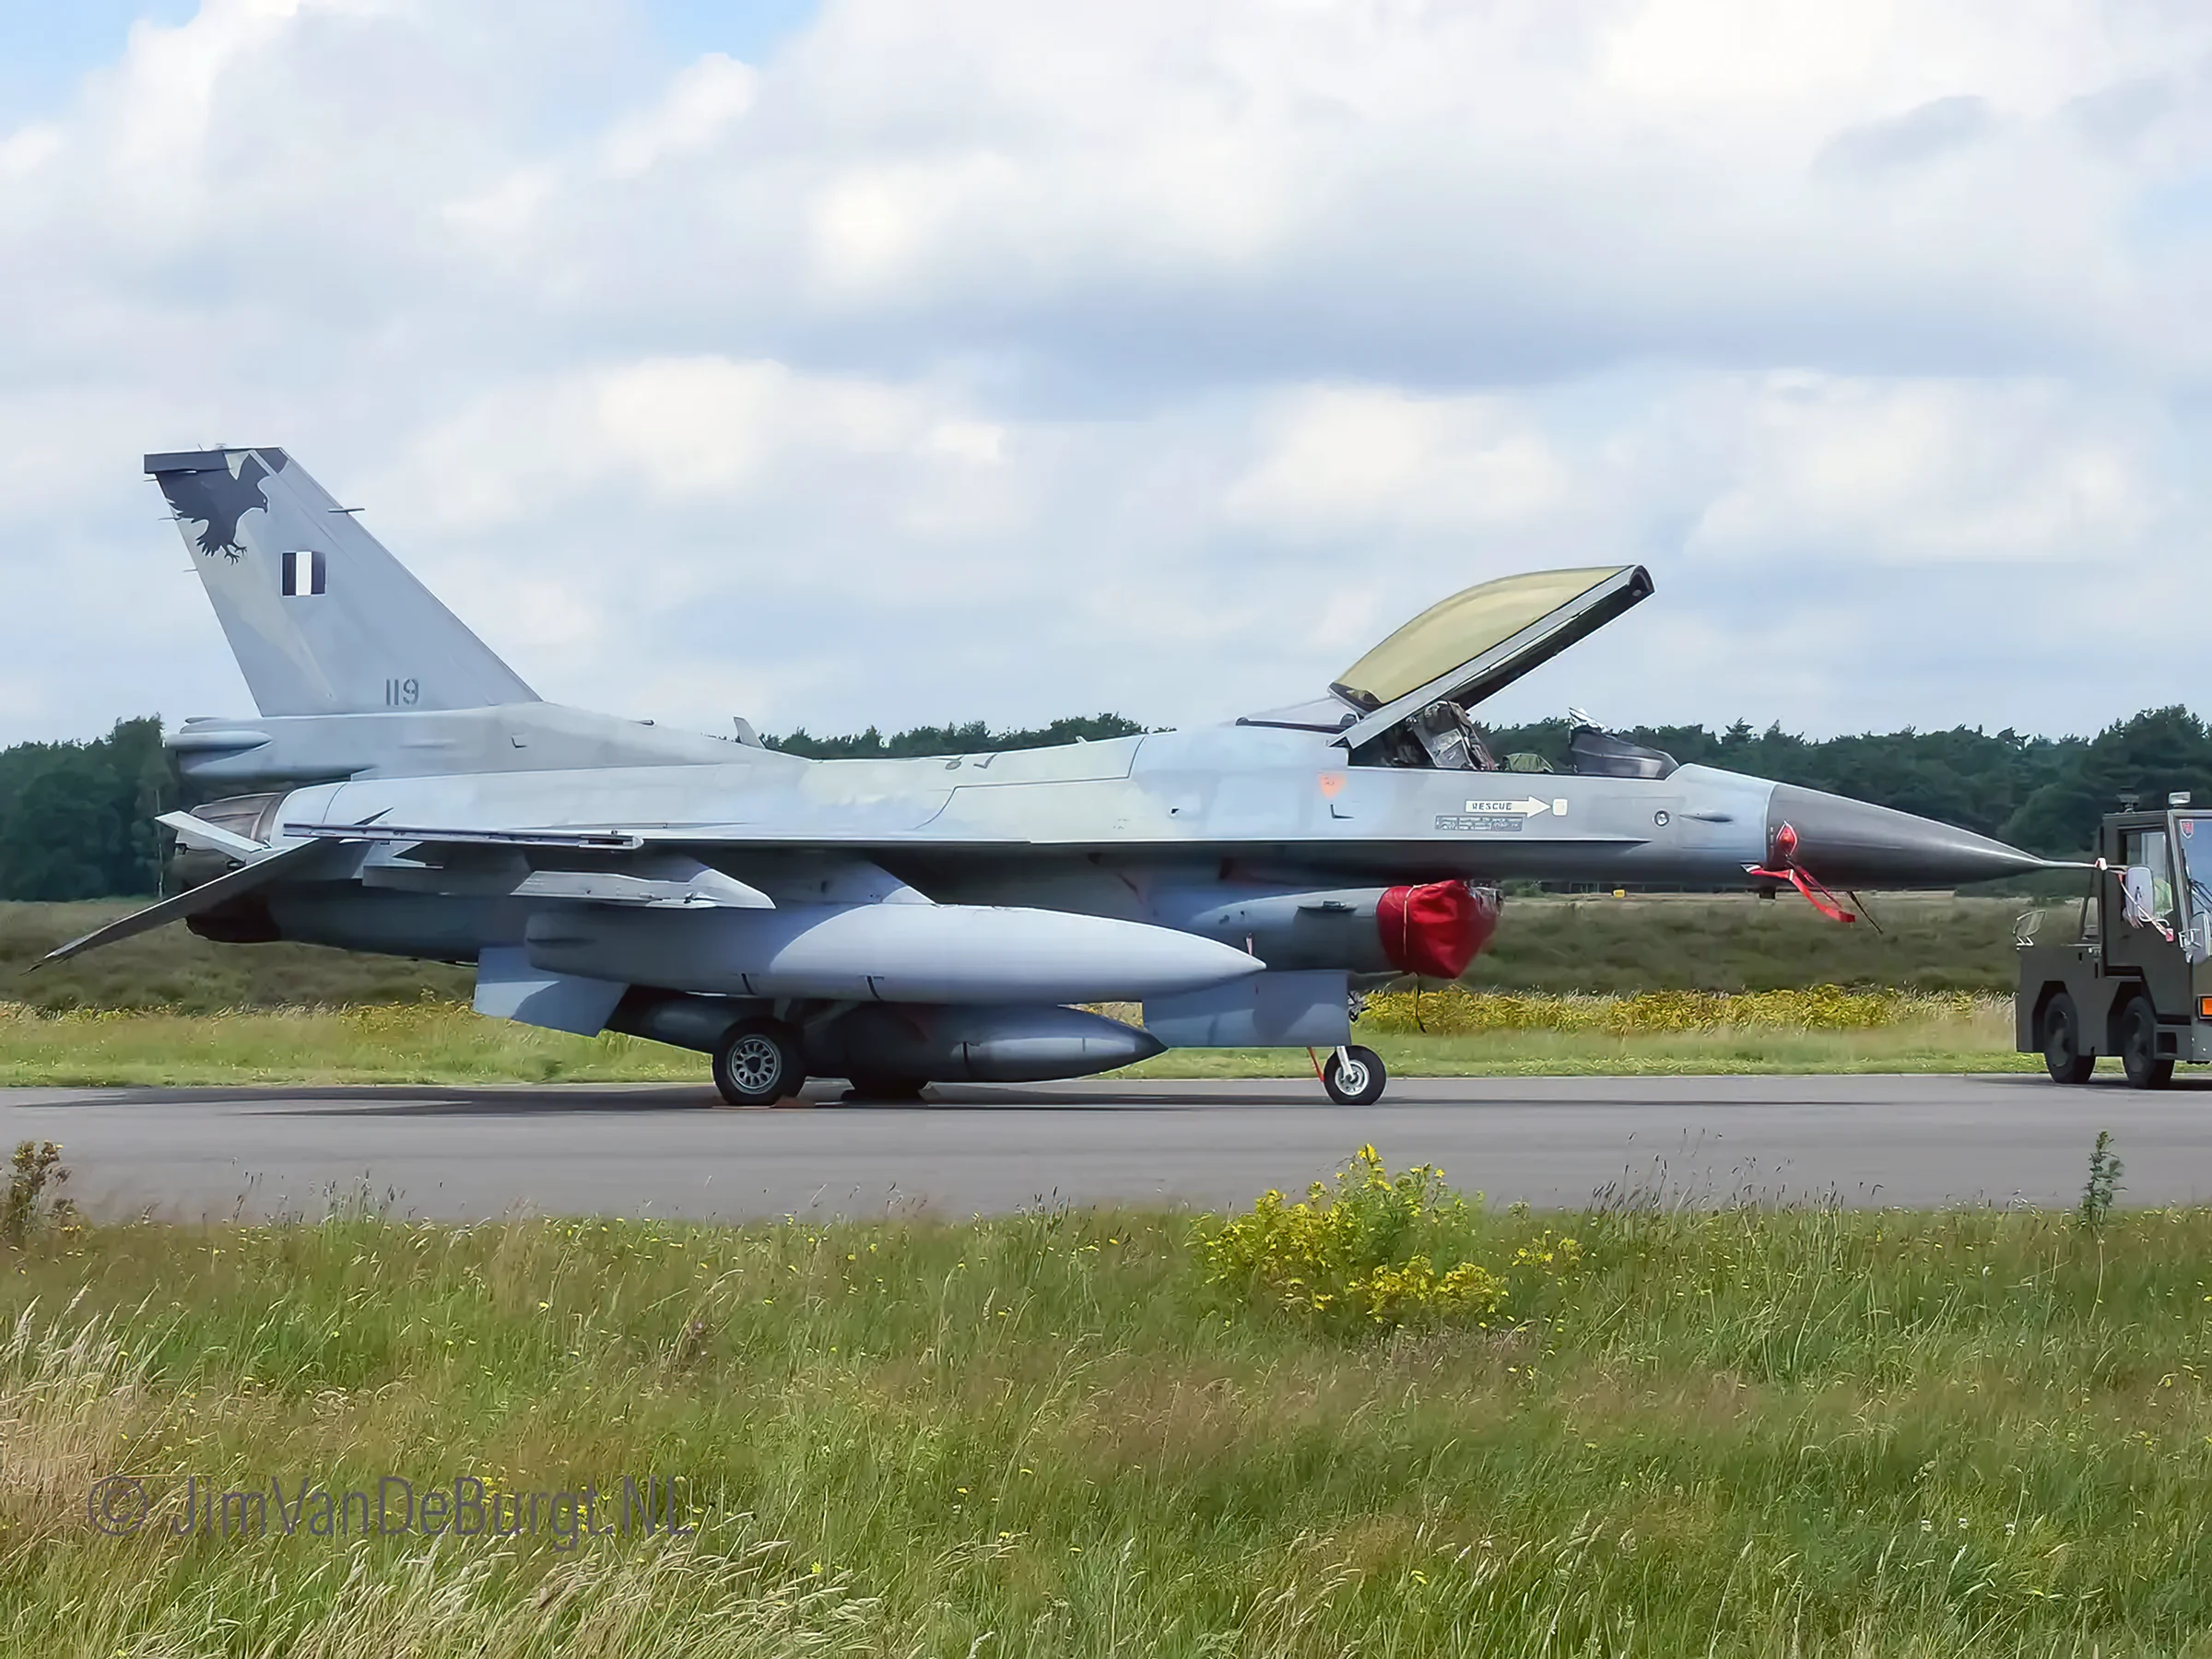 Grecia pone a la venta sus viejos F-16 y Mirage 2000